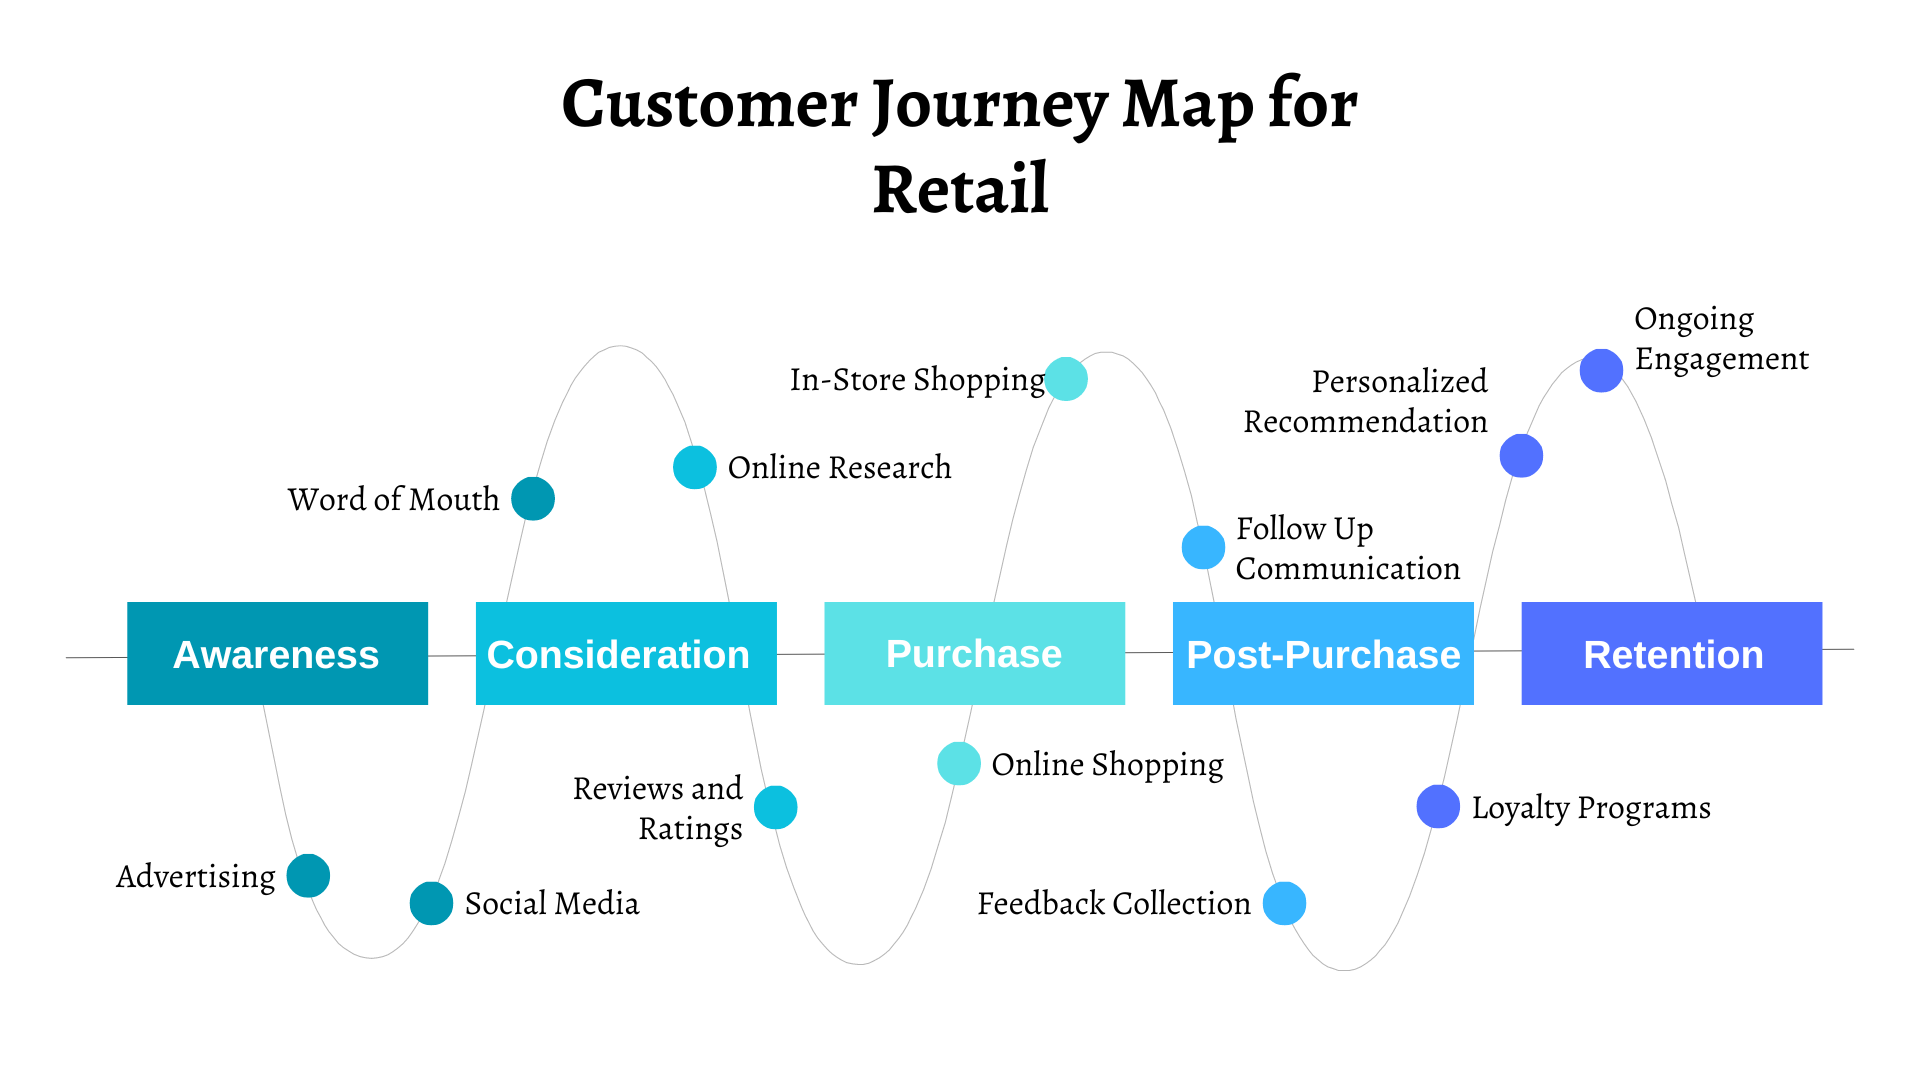 Copy of Customer Journey Map by Slidego.pptx